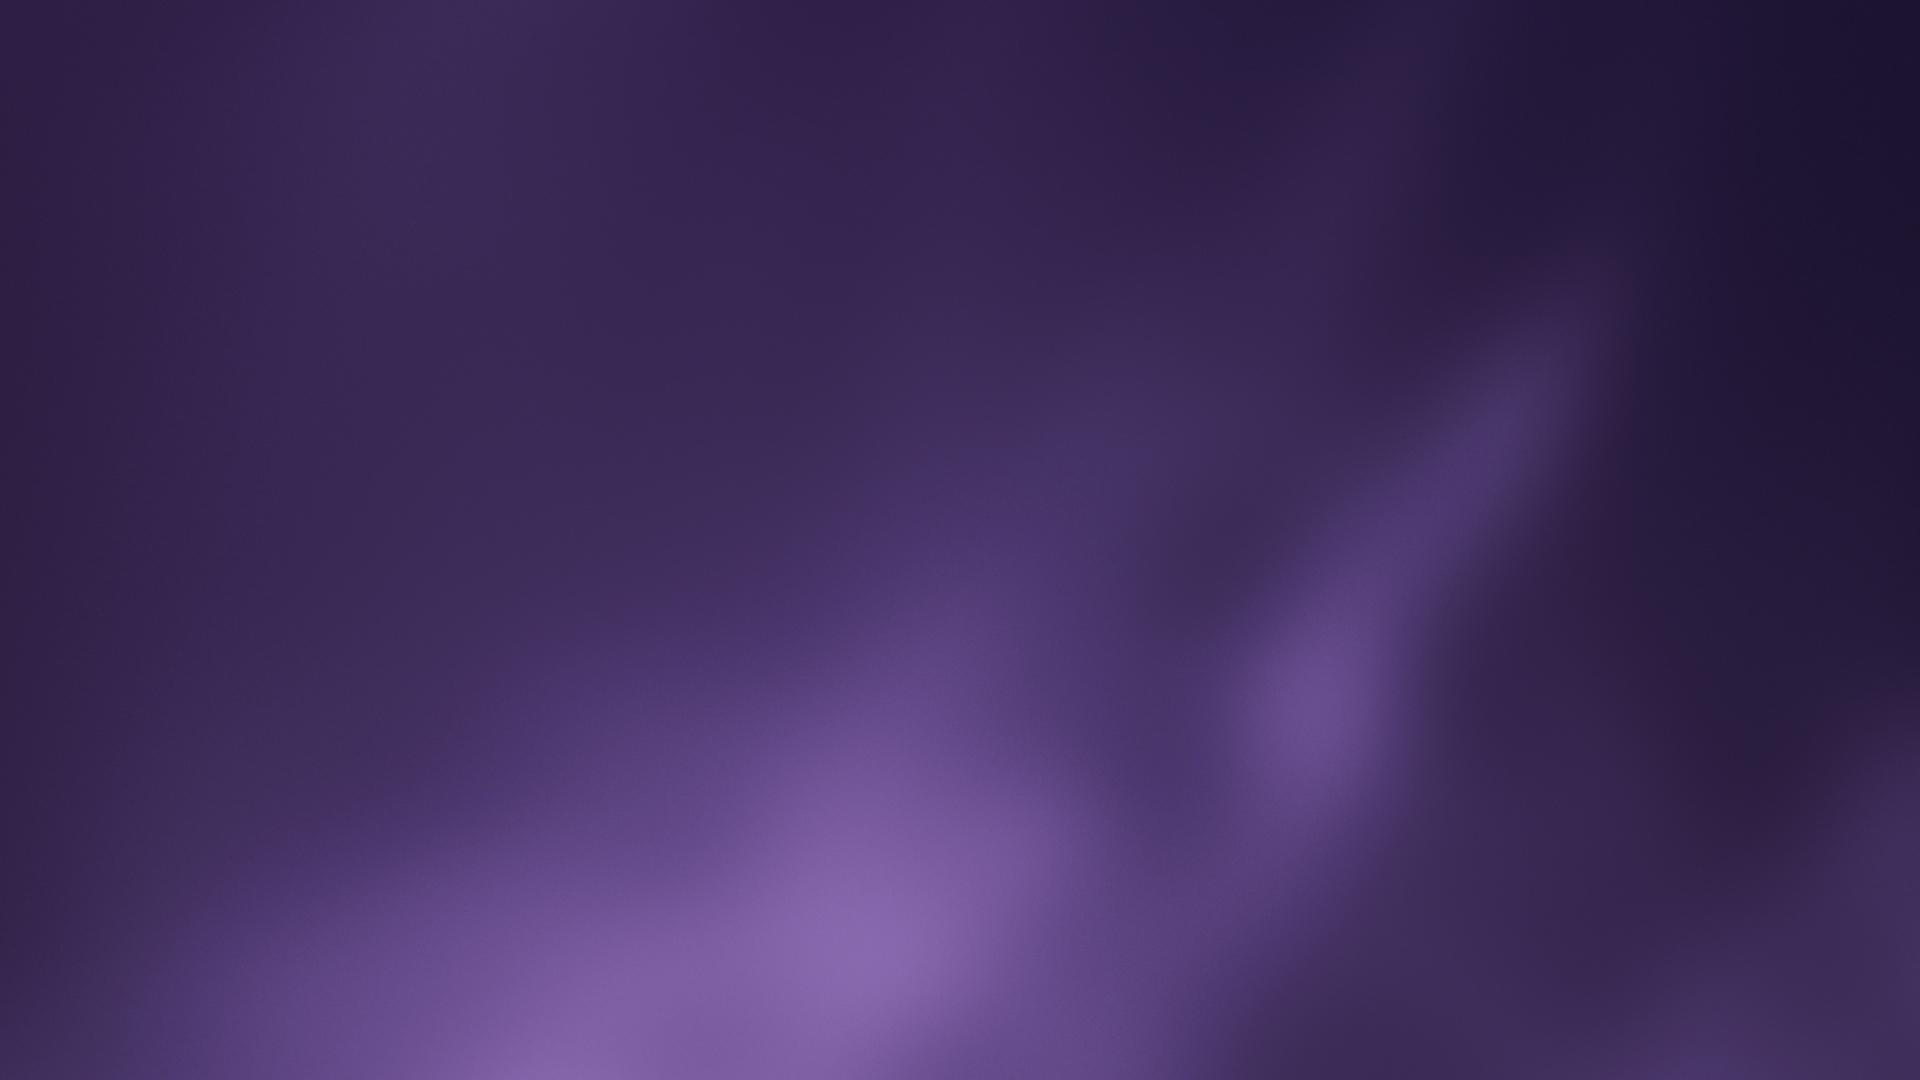 Purple texture header background